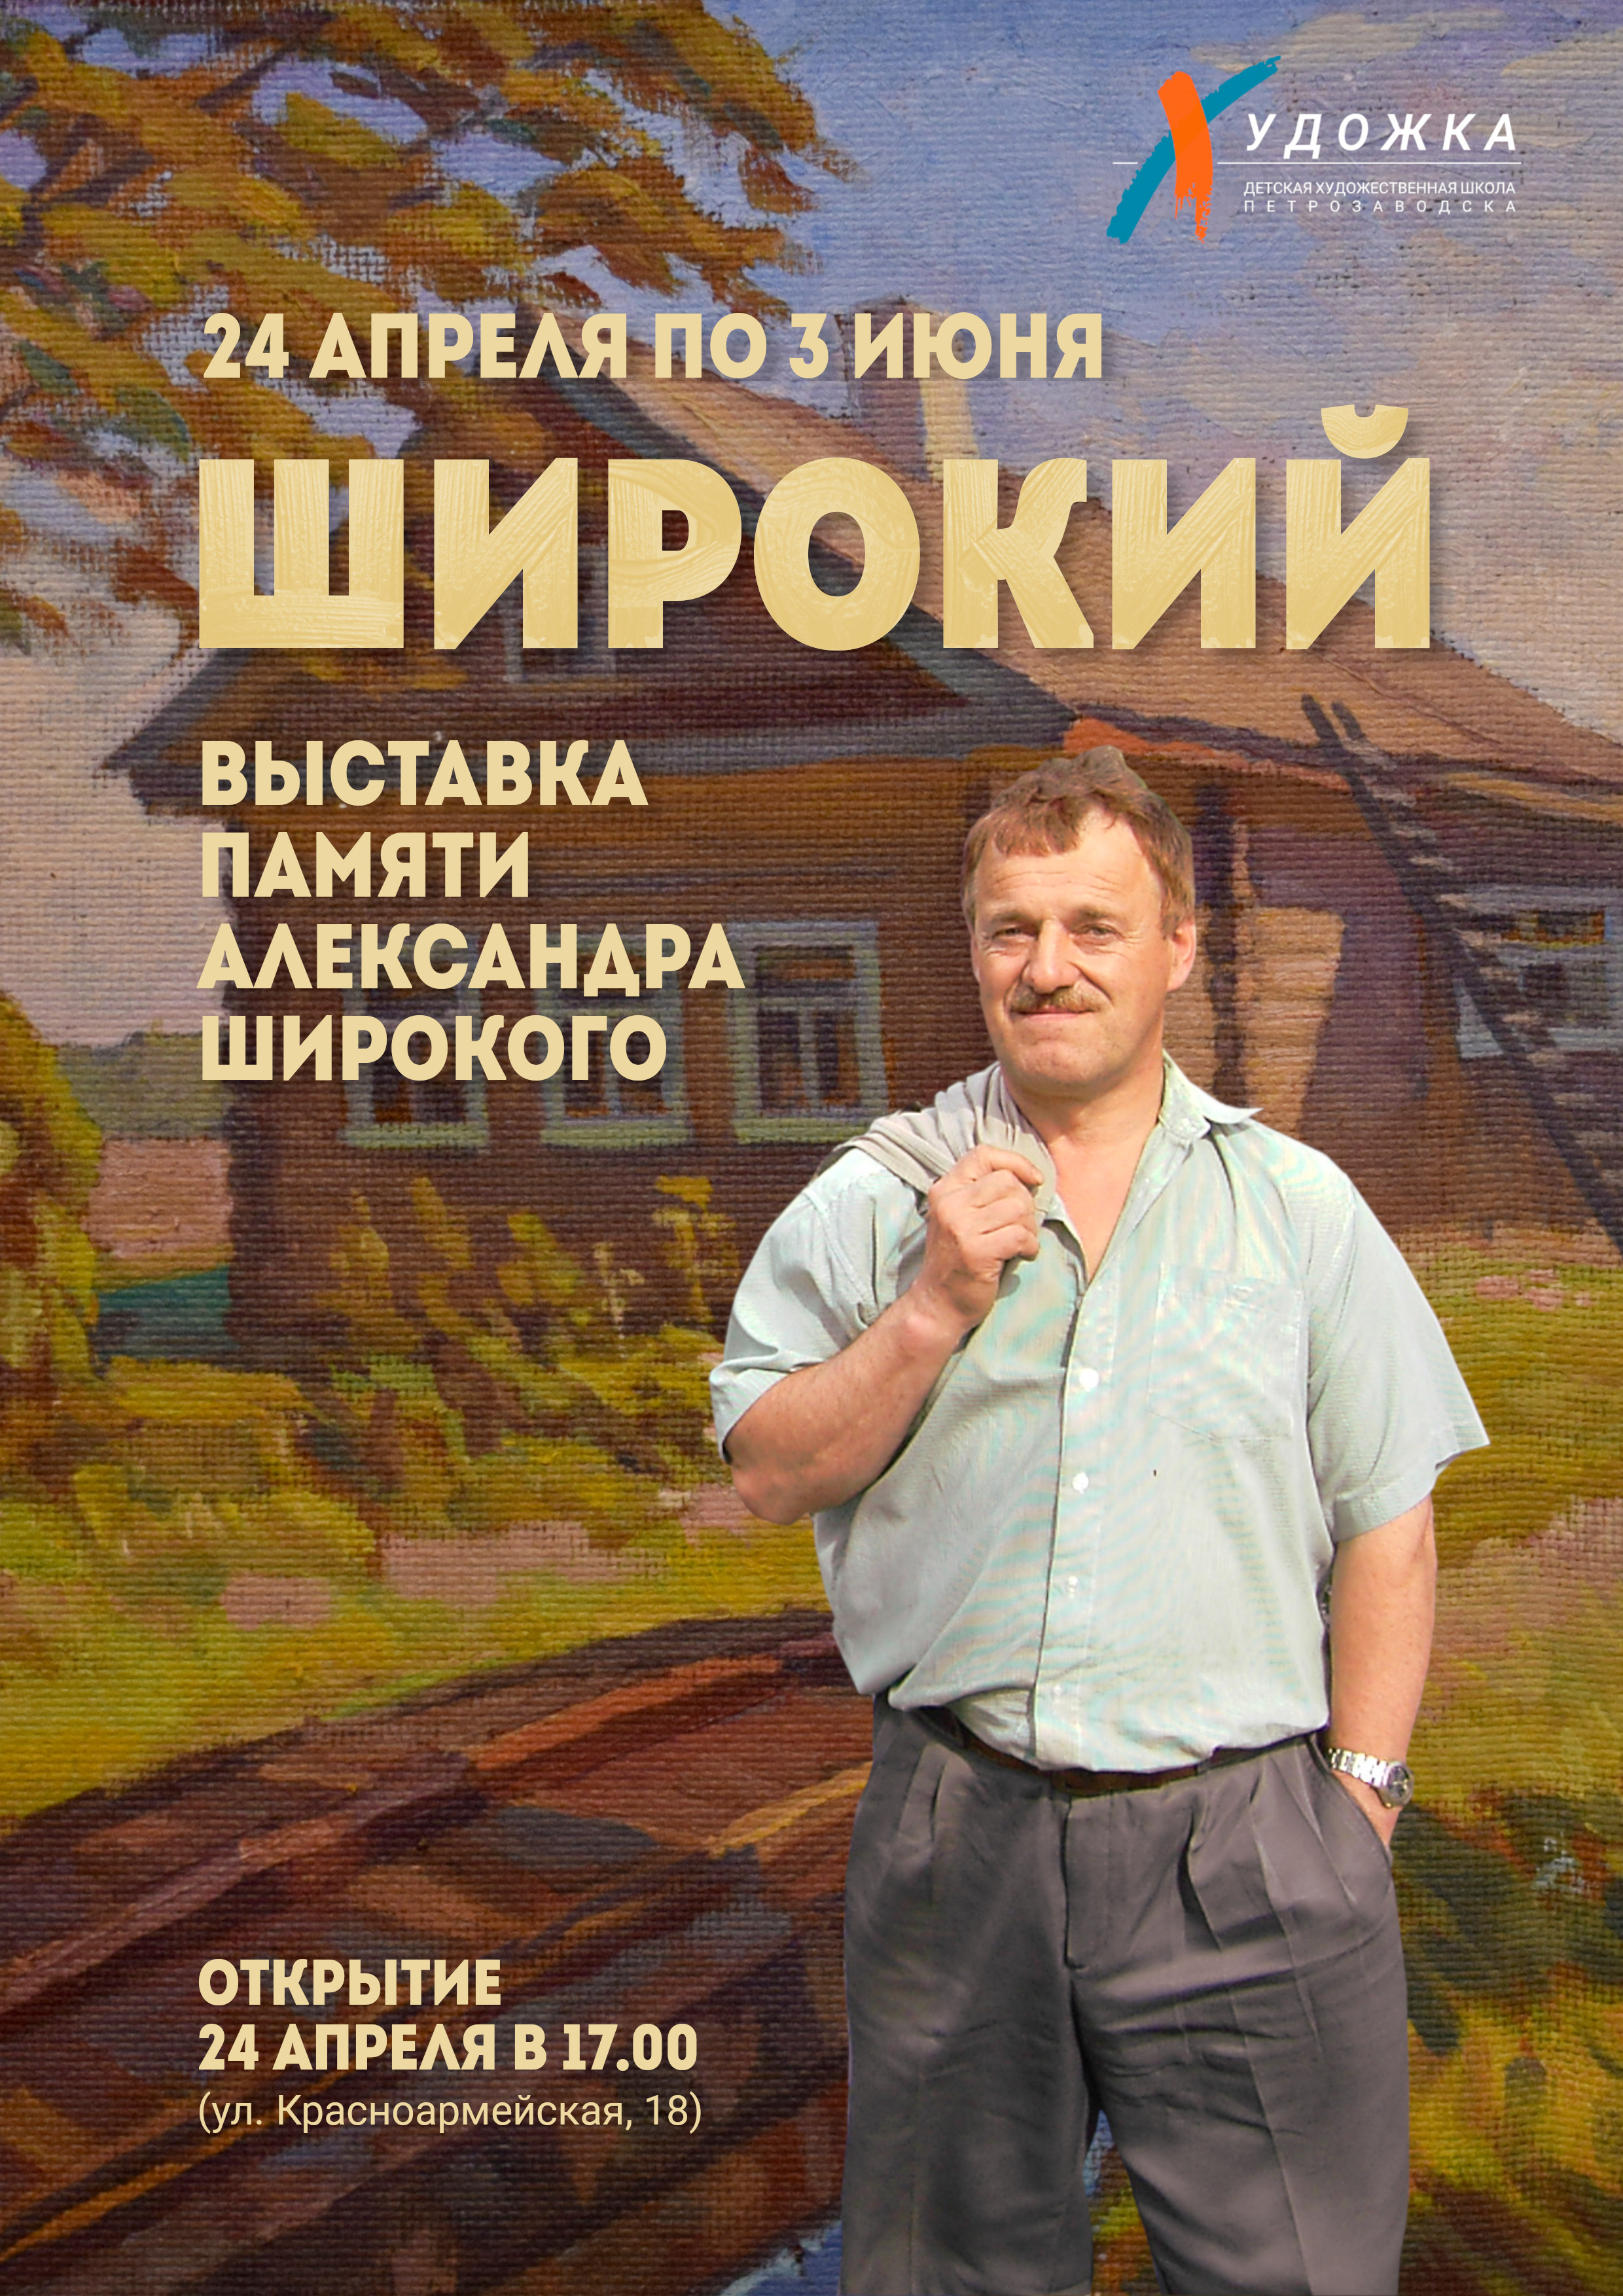 Выставка памяти Александра Широкого